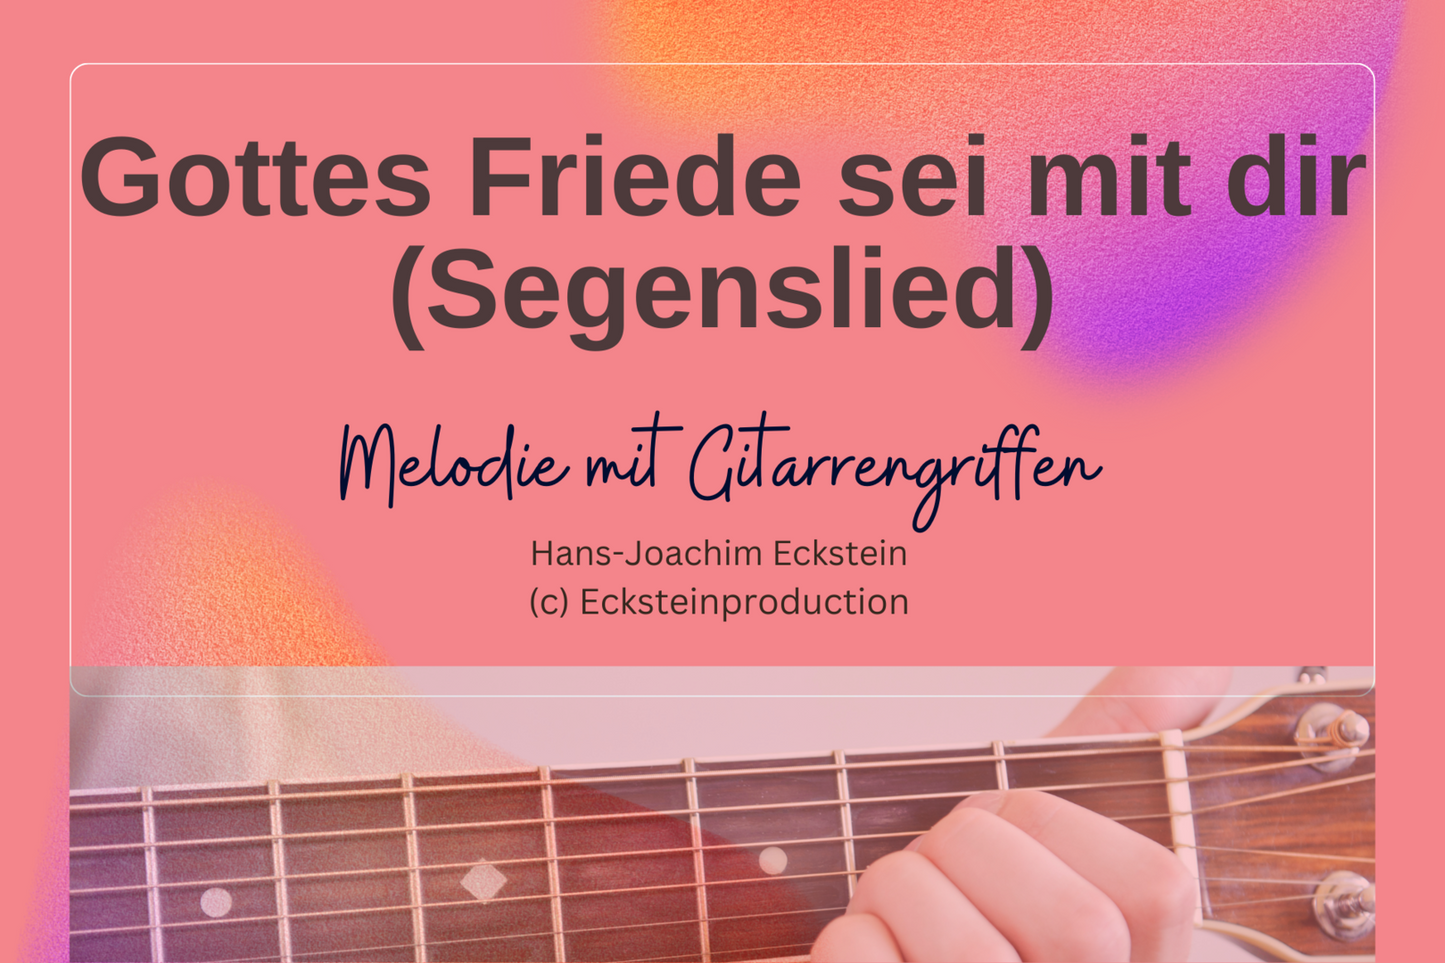 Gottes Friede - Segenslied (Melodie mit Gitarrengriffen) Hans-Joachim Eckstein